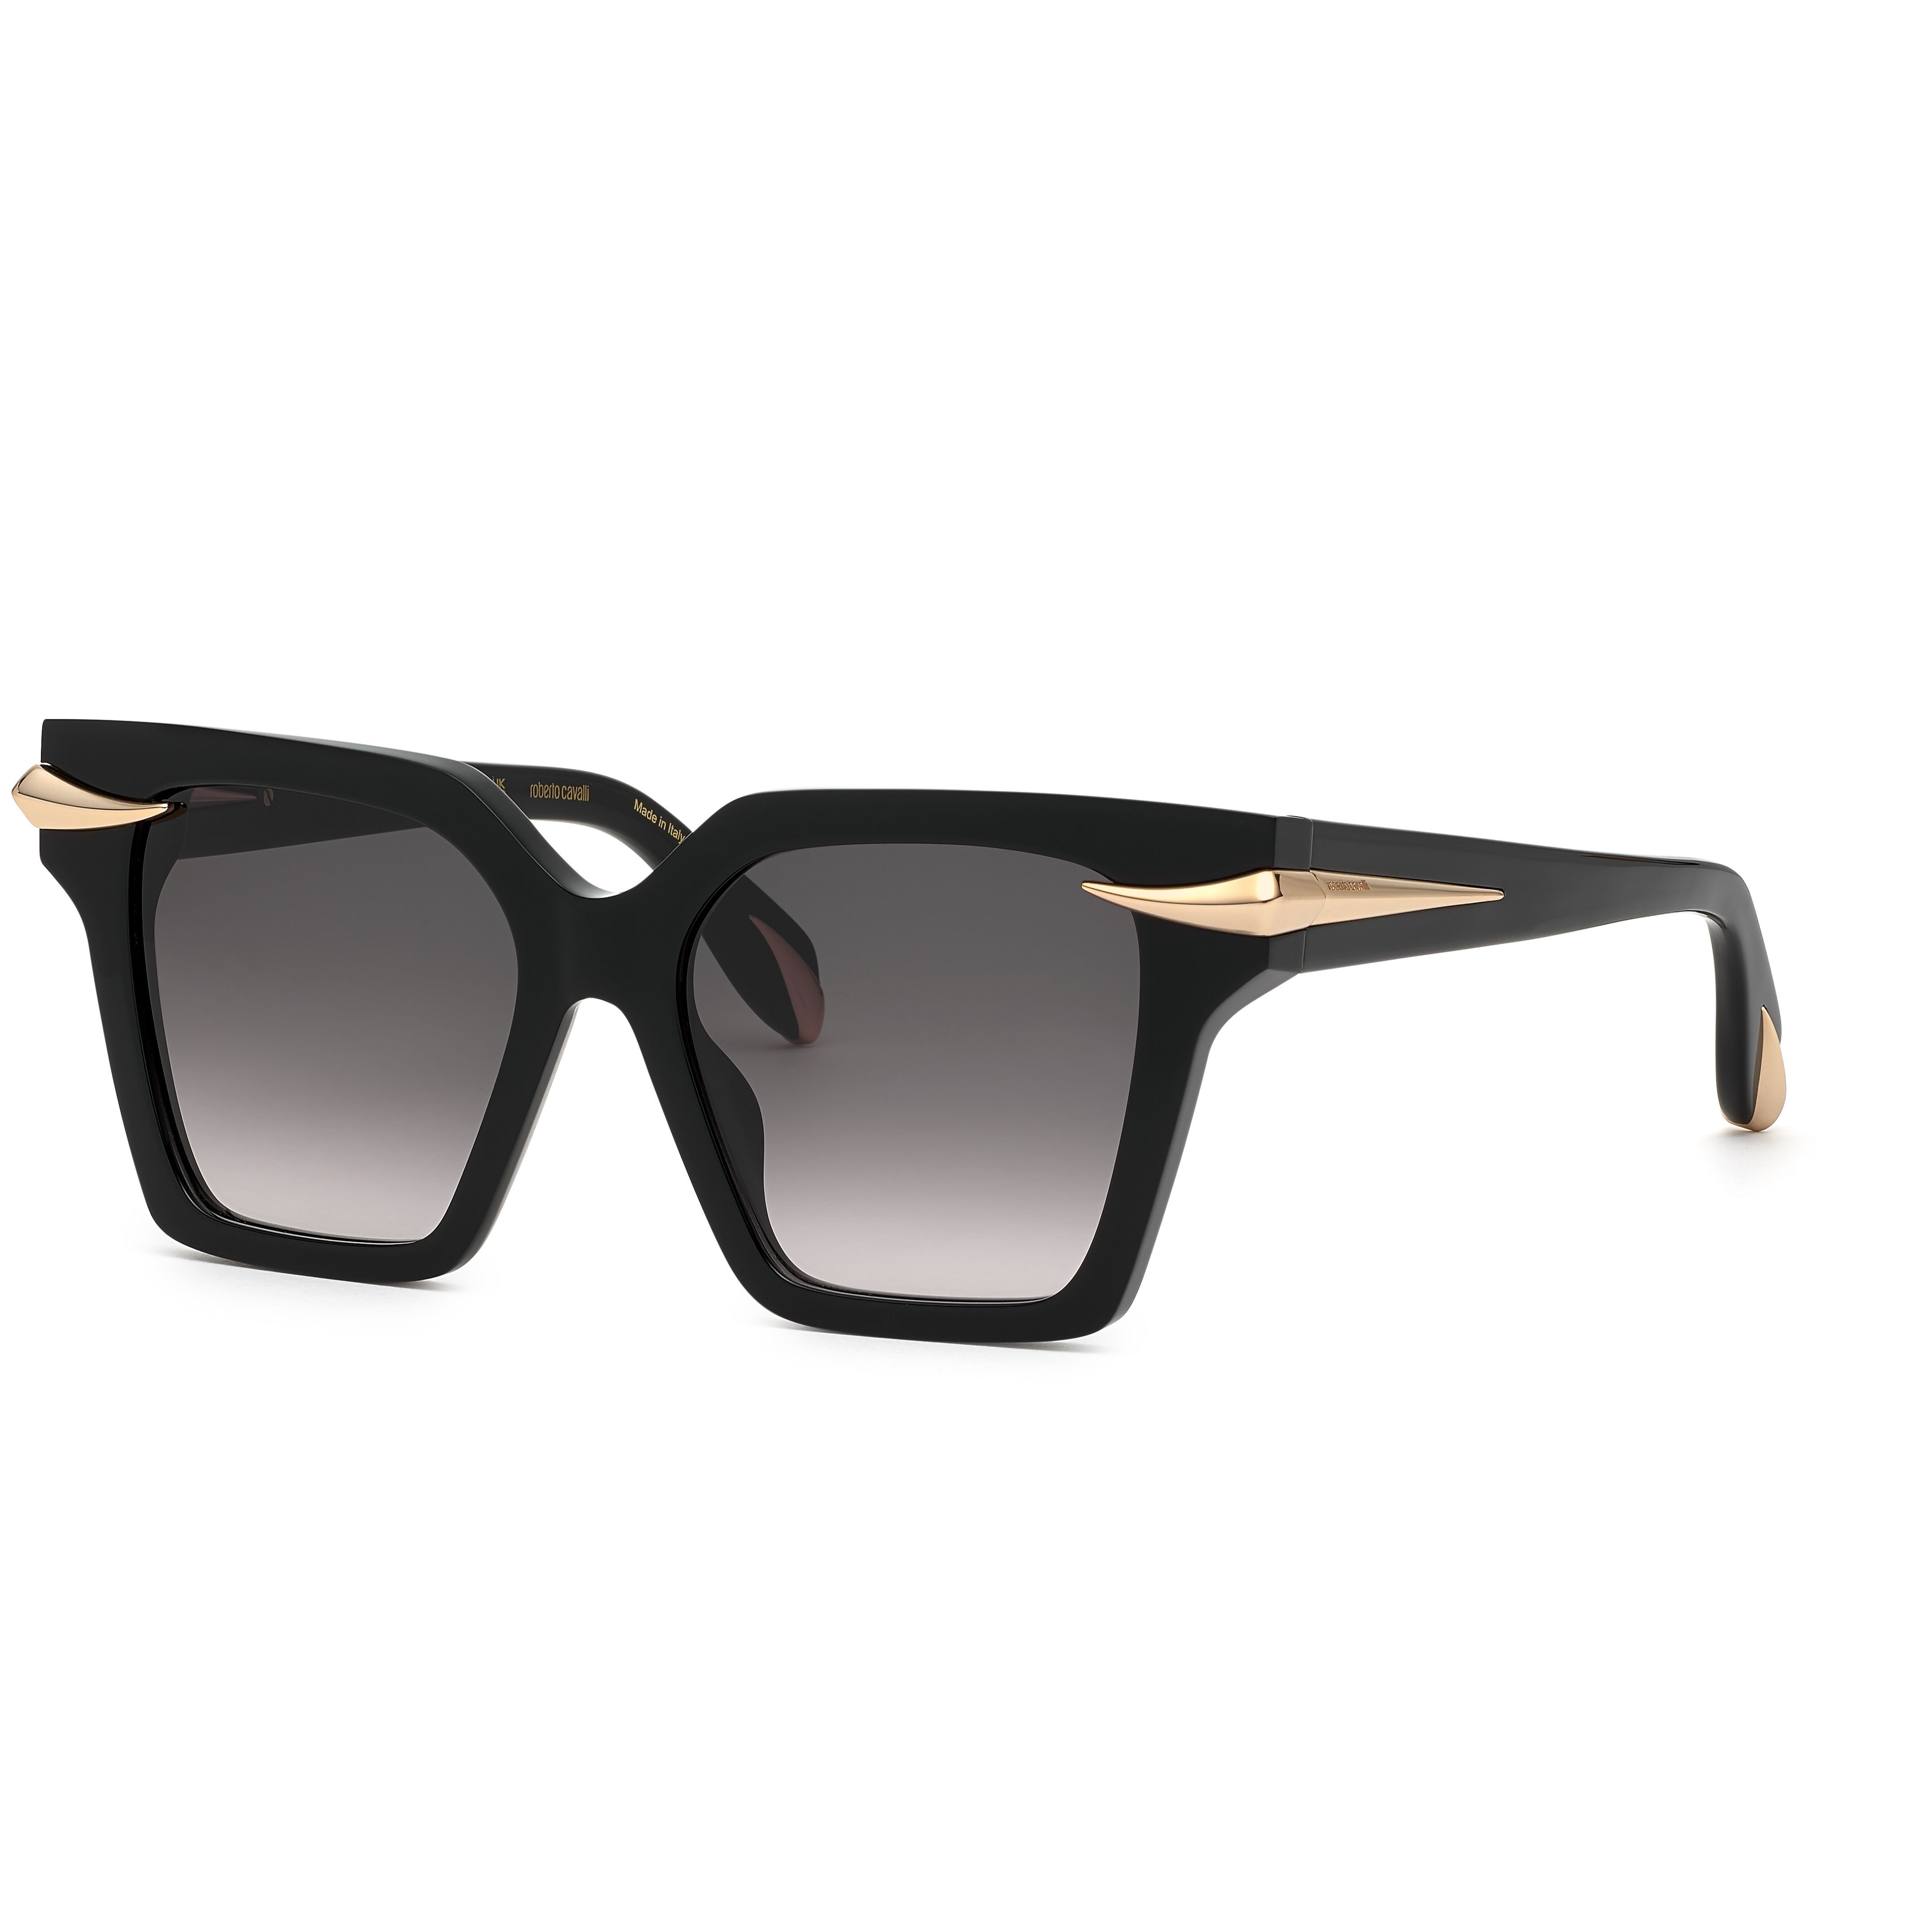 SRC002M Square Sunglasses 700 - size 54